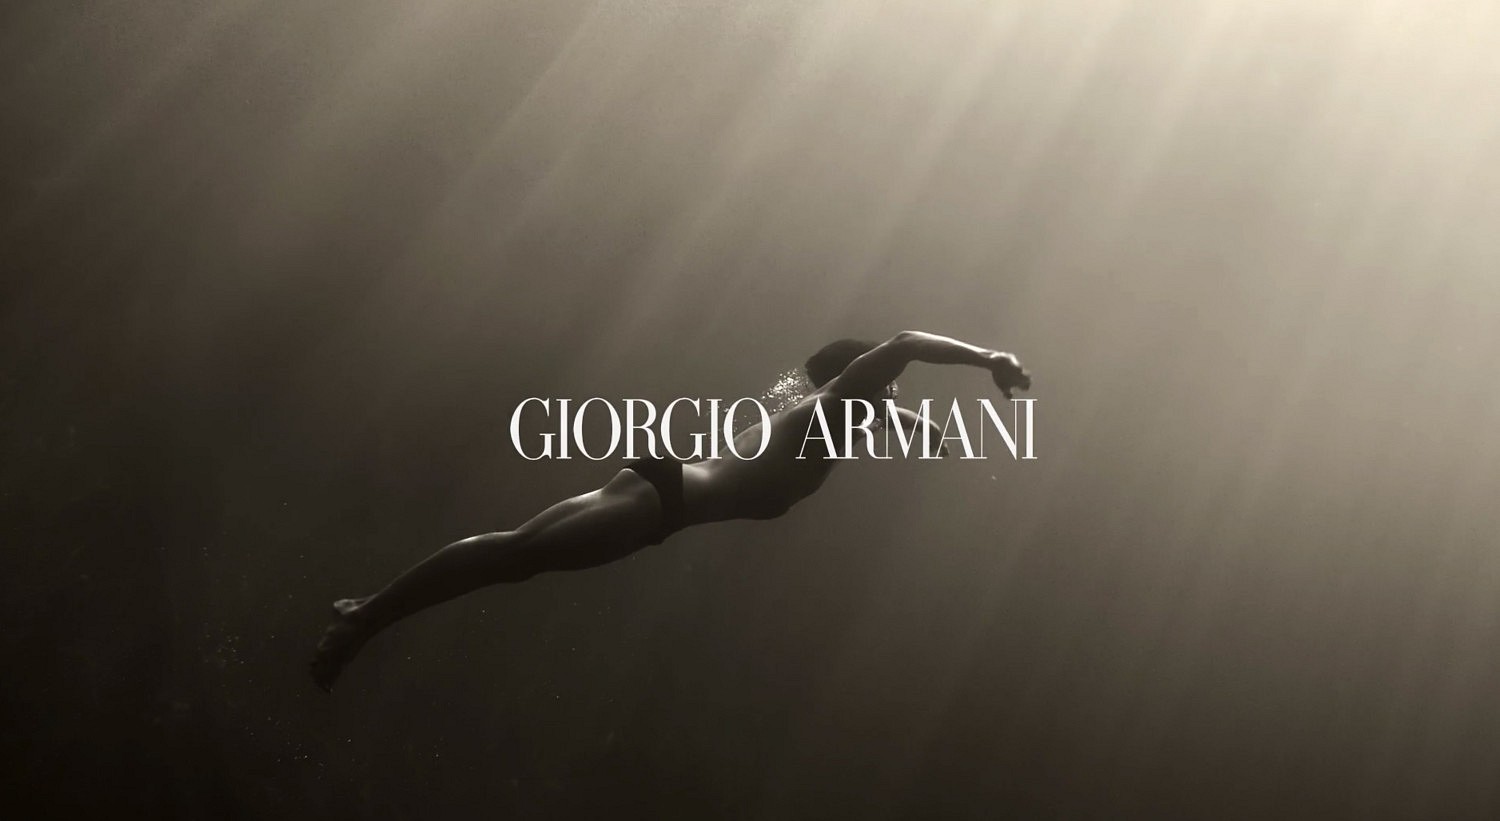   "AQUA DI GIO ABSOLU"  GIORGIO ARMANI 2018     Directed by F.ROUSSEAU  <br />
WANDA PROD 